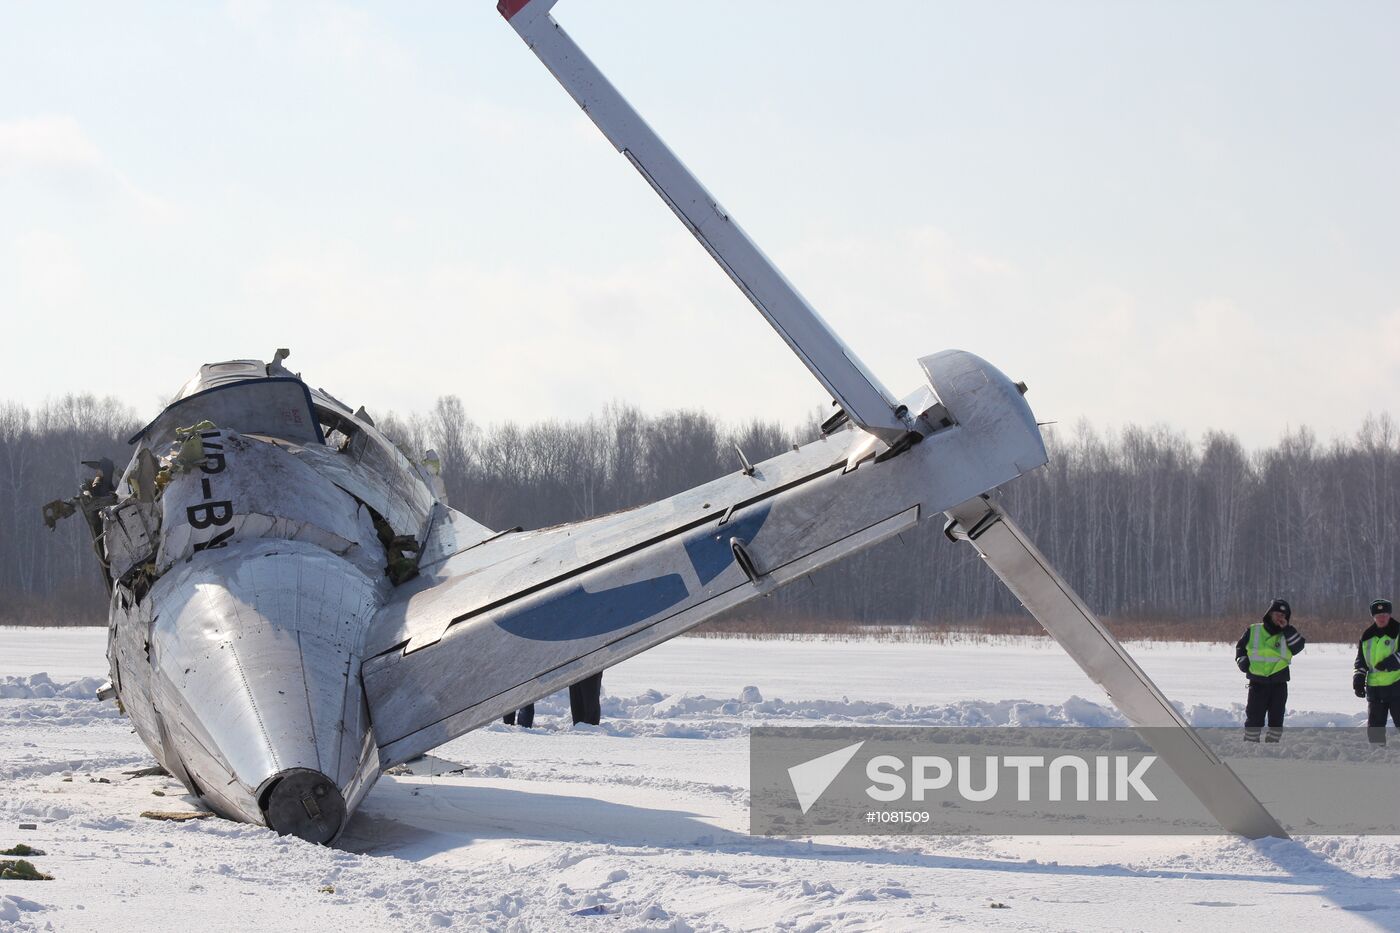 ATR 72 plane crashes near Tyumen